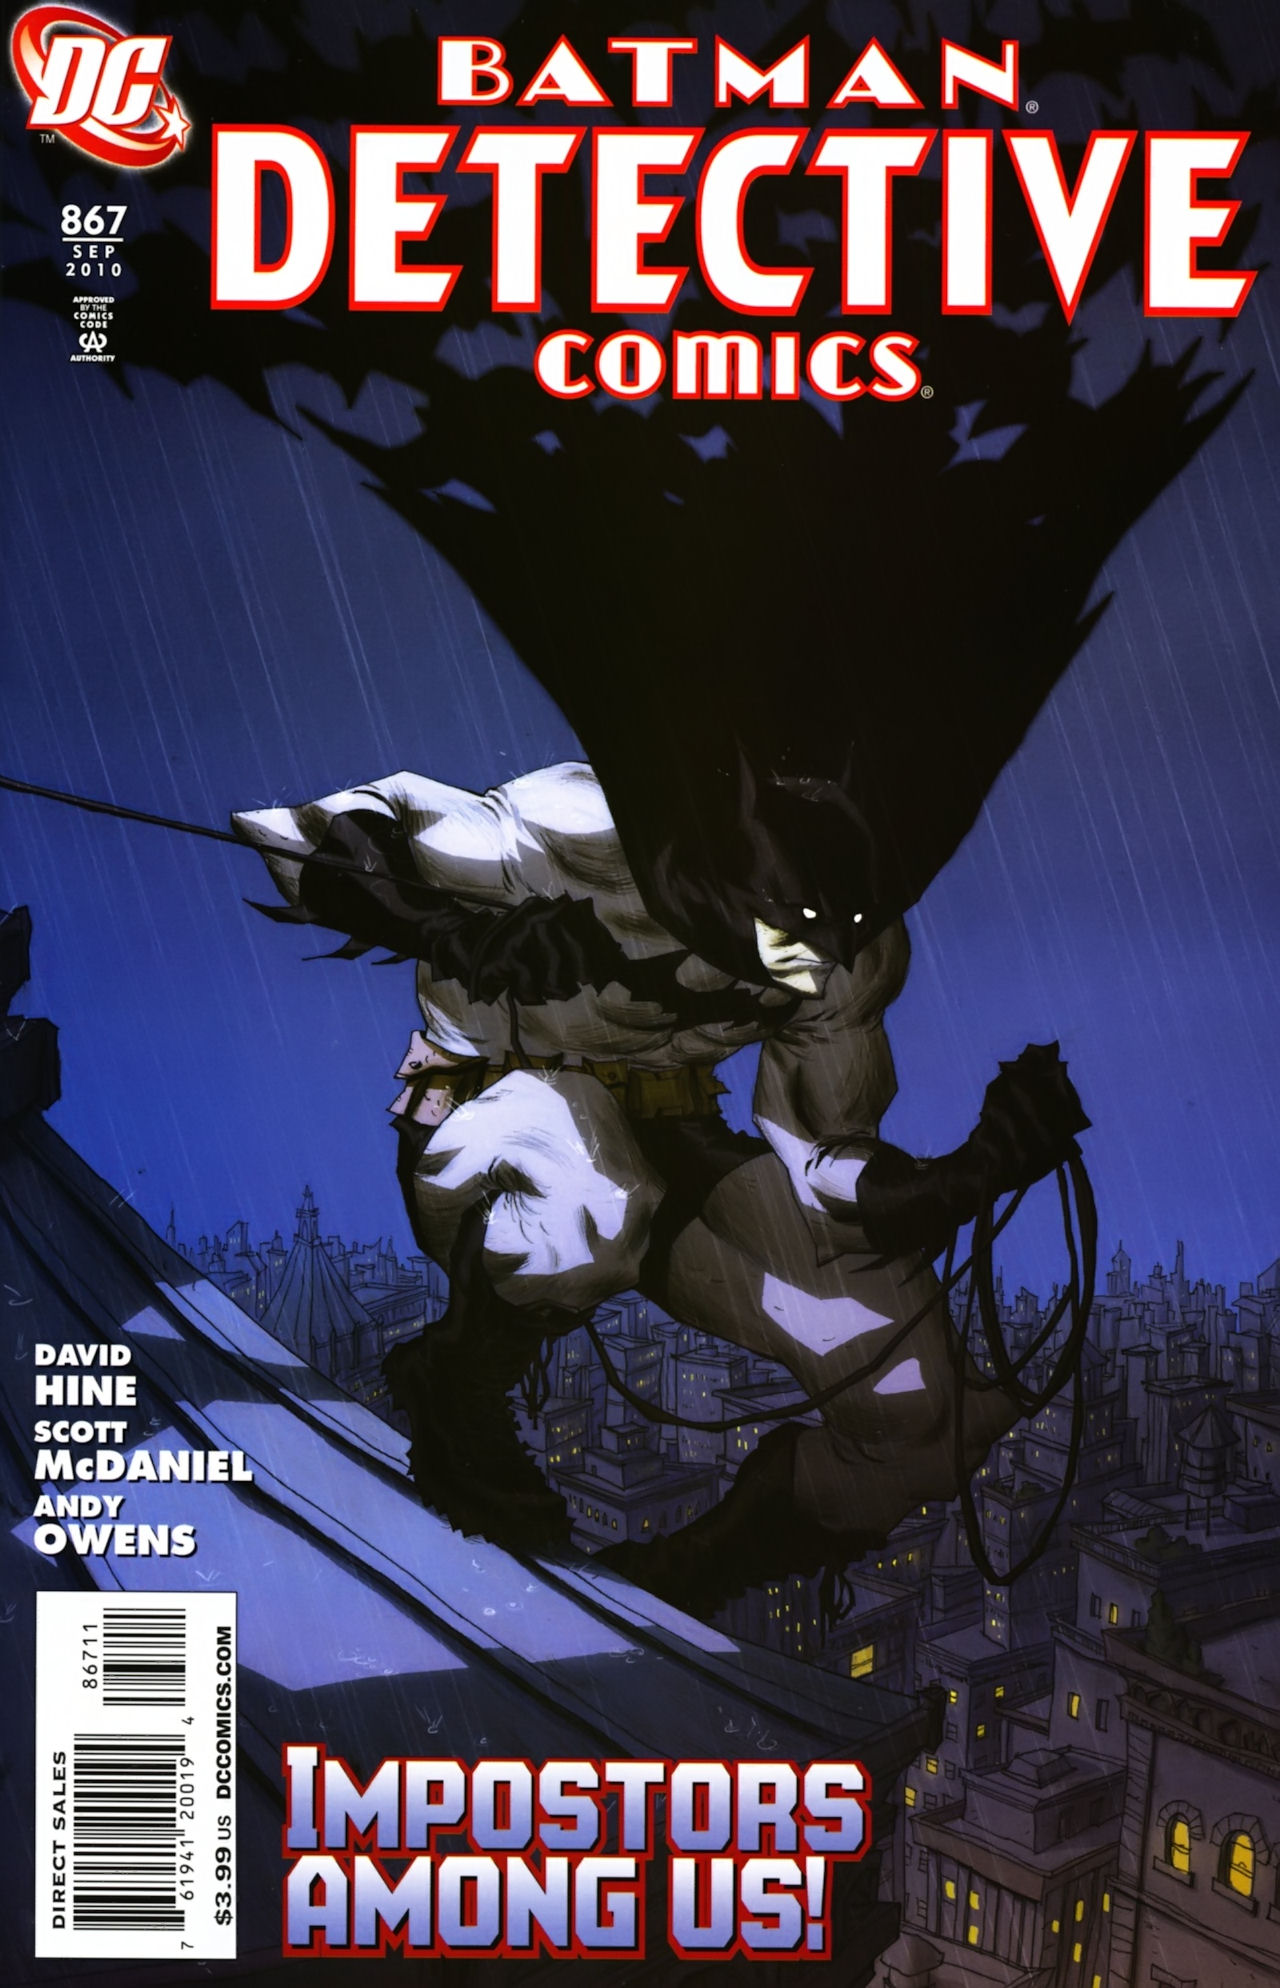 Detective Comics Vol. 1 #867